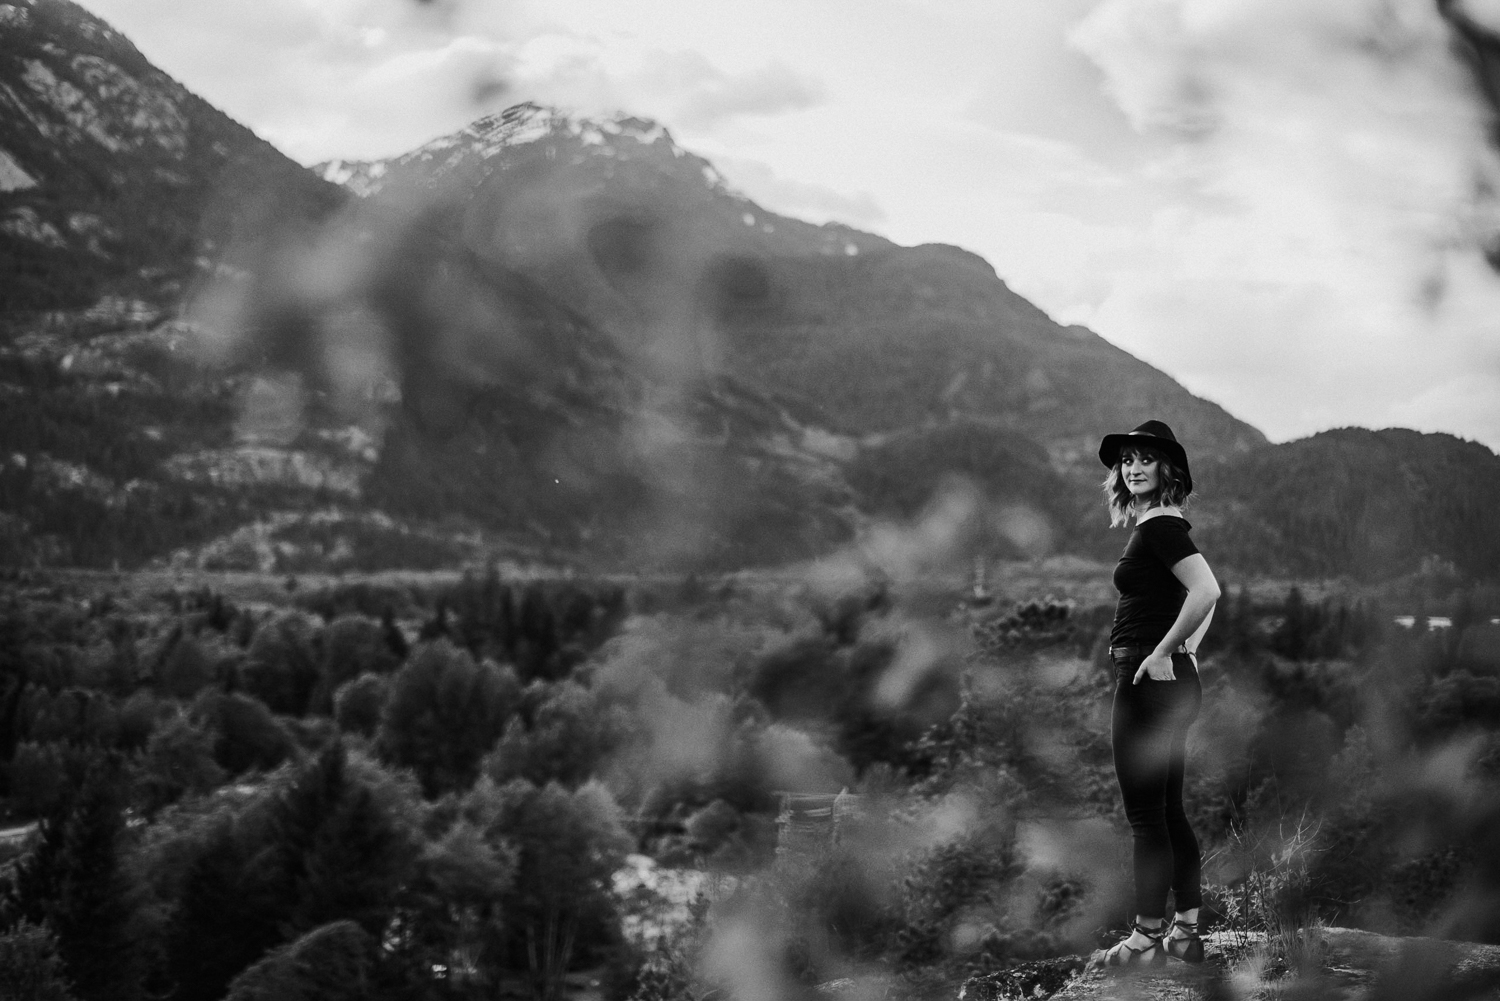 Squamish Portrait Photography, Squamish Lifestyle Photographer, Squamish Lifestyle Photography, Squamish Family Photographer, Squamish Wedding Photographer, Whistler Portrait Photographer, Whistler Portrait Photography, Vancouver Portrait Photographer, Vancouver Portrait Photography, Vancouver Boudoir Photographer, 